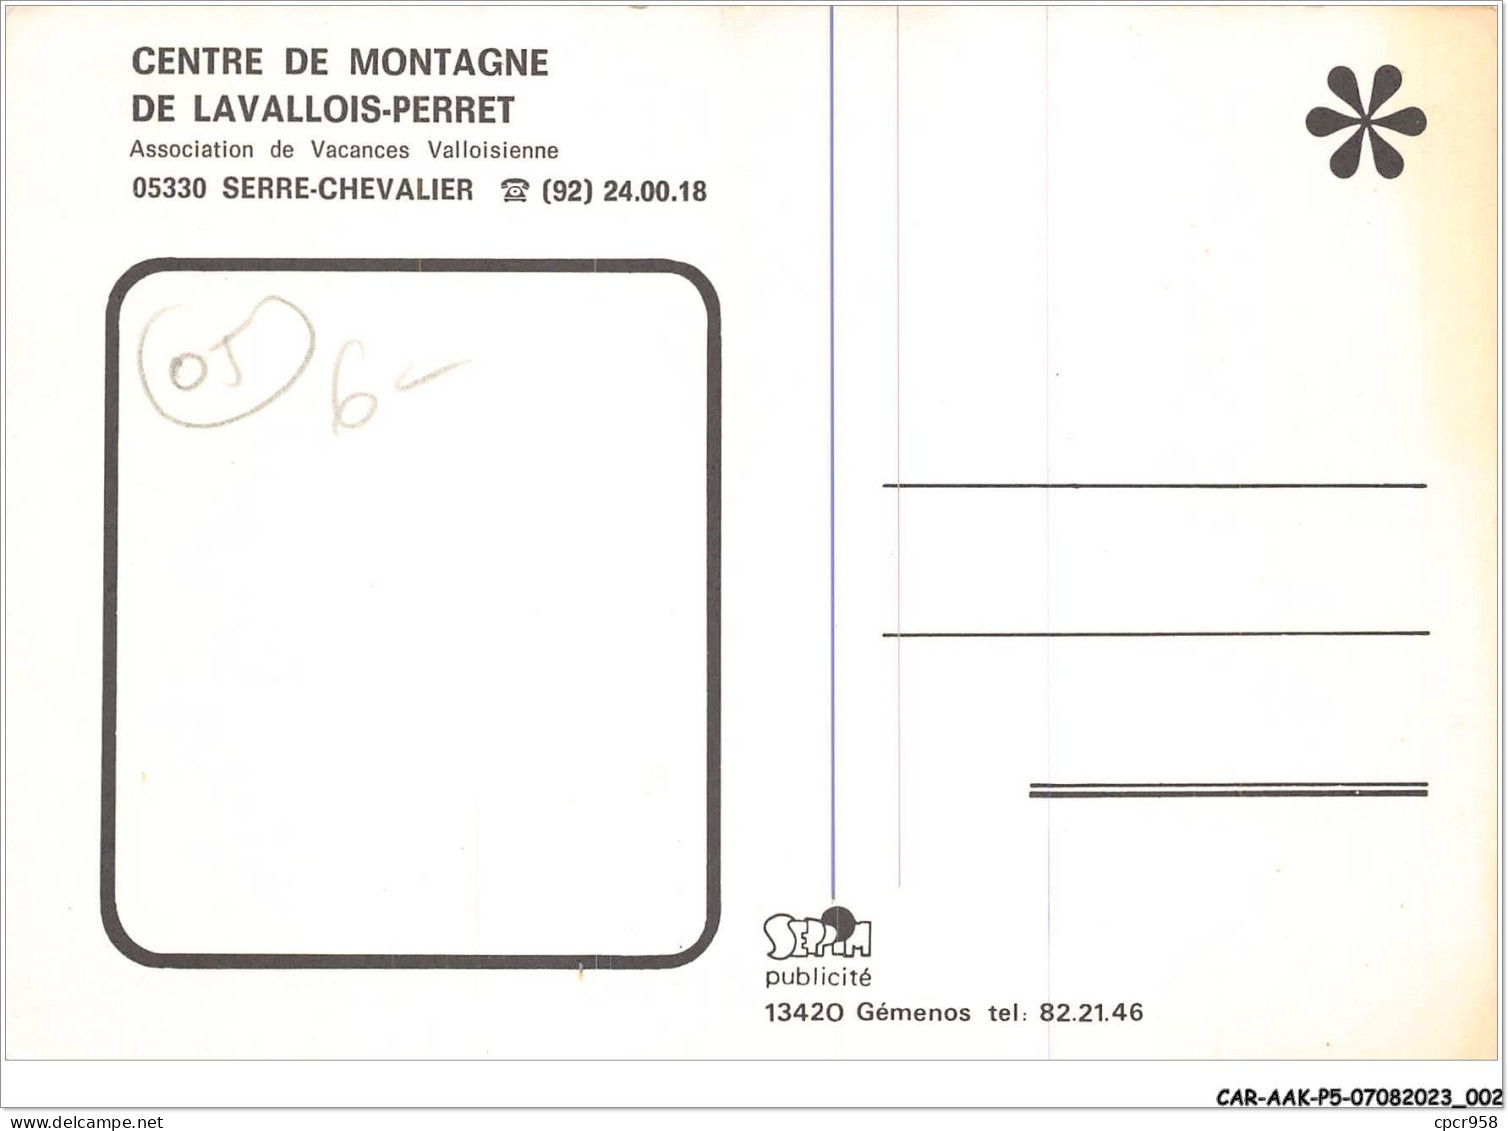 CAR-AAKP5-05-0469 - SERRE-CHEVALIER - Centre De Montagne De Levallois-Perret - Serre Chevalier